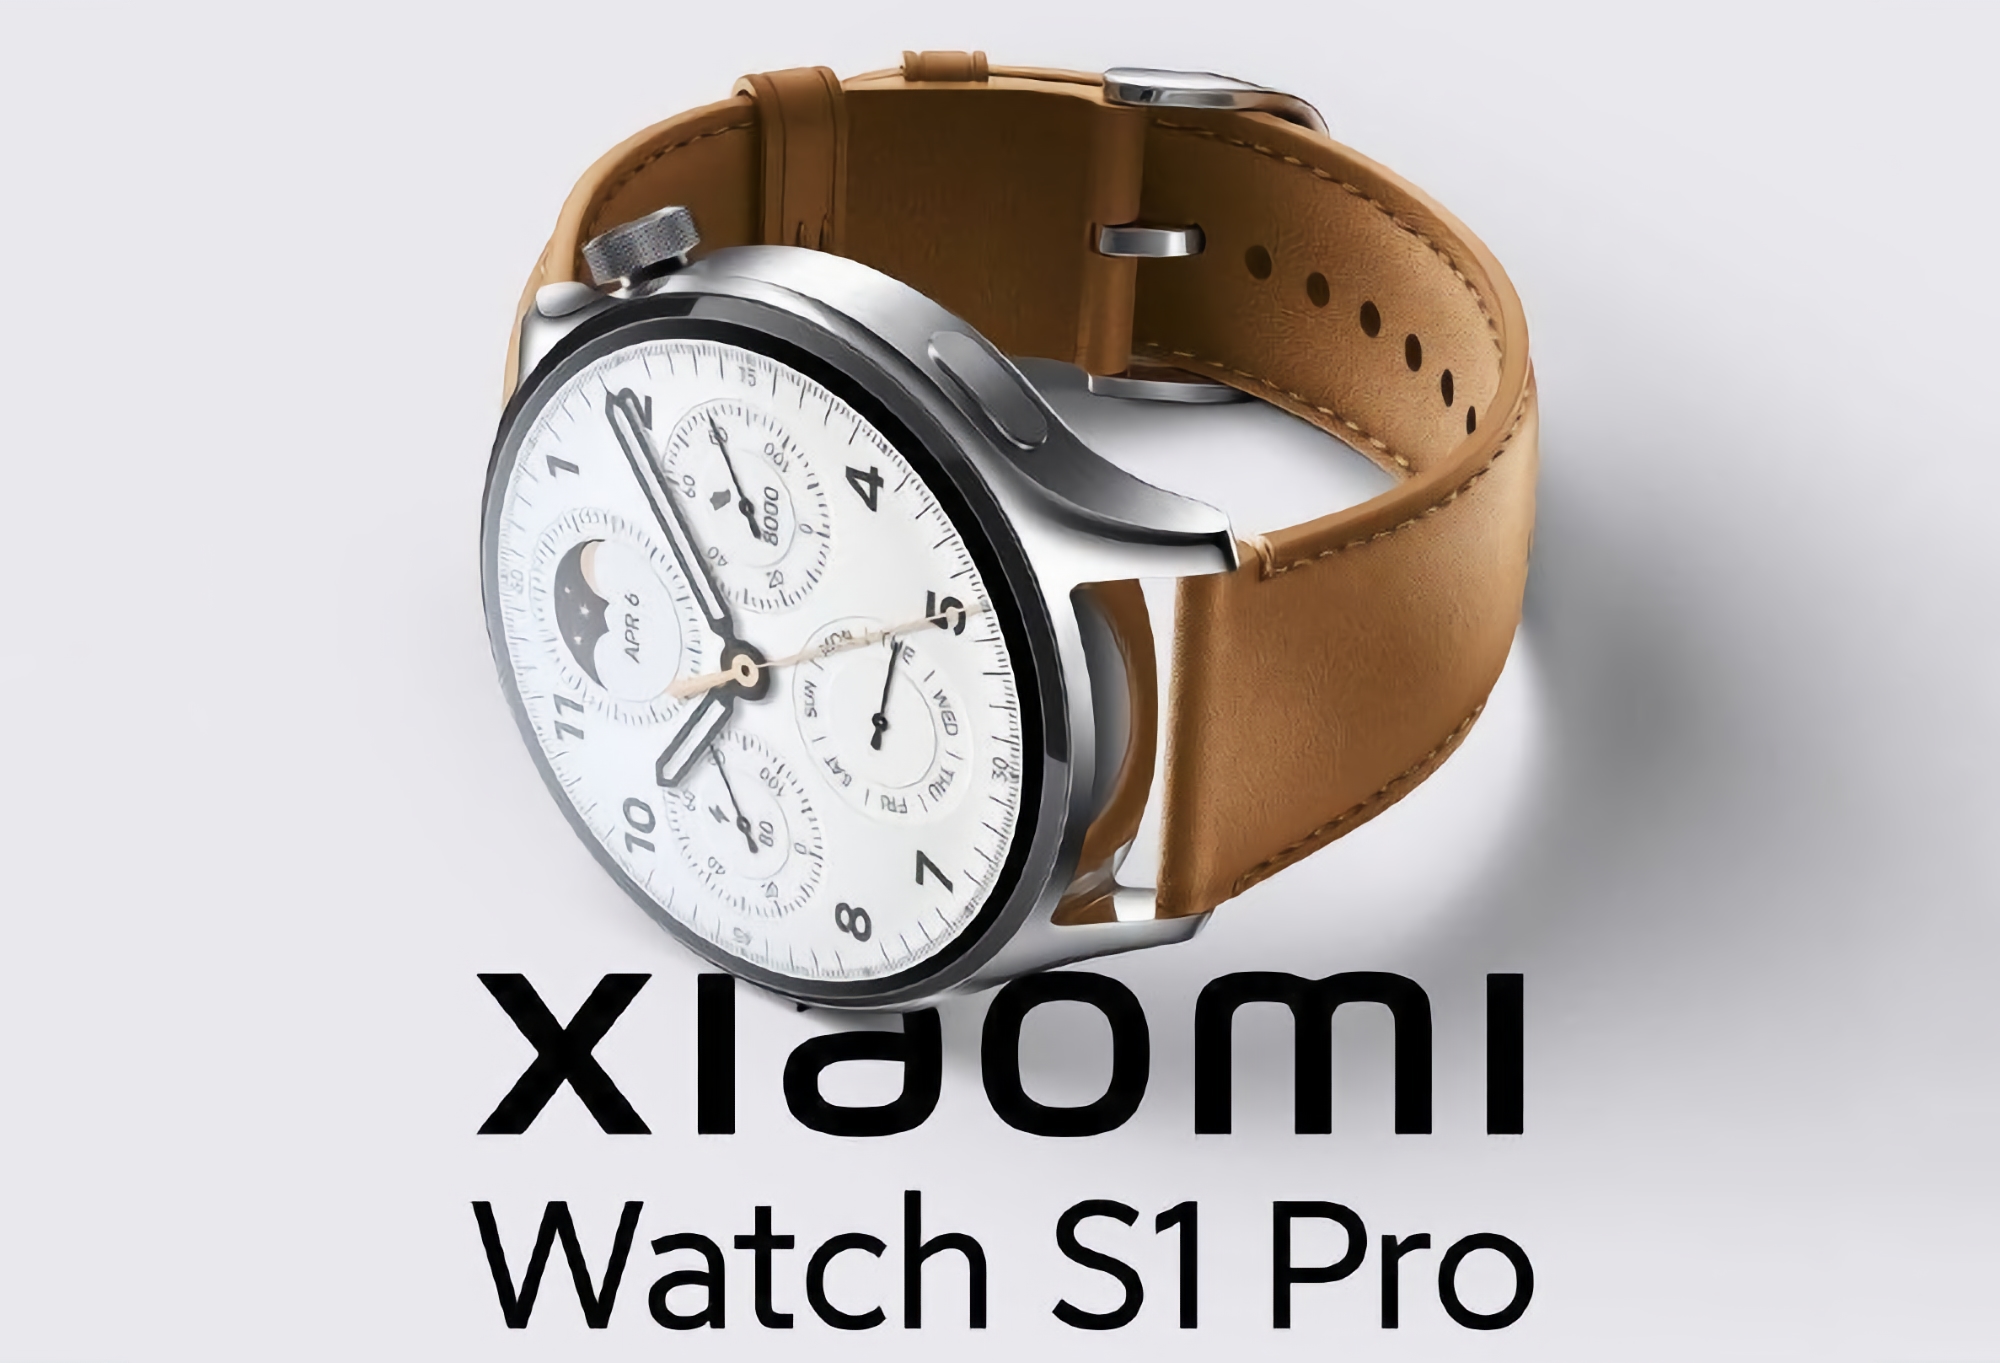 Ще одна новинка: Xiaomi 11 серпня представить смарт-годинник Watch S1 Pro, ось як він виглядатиме